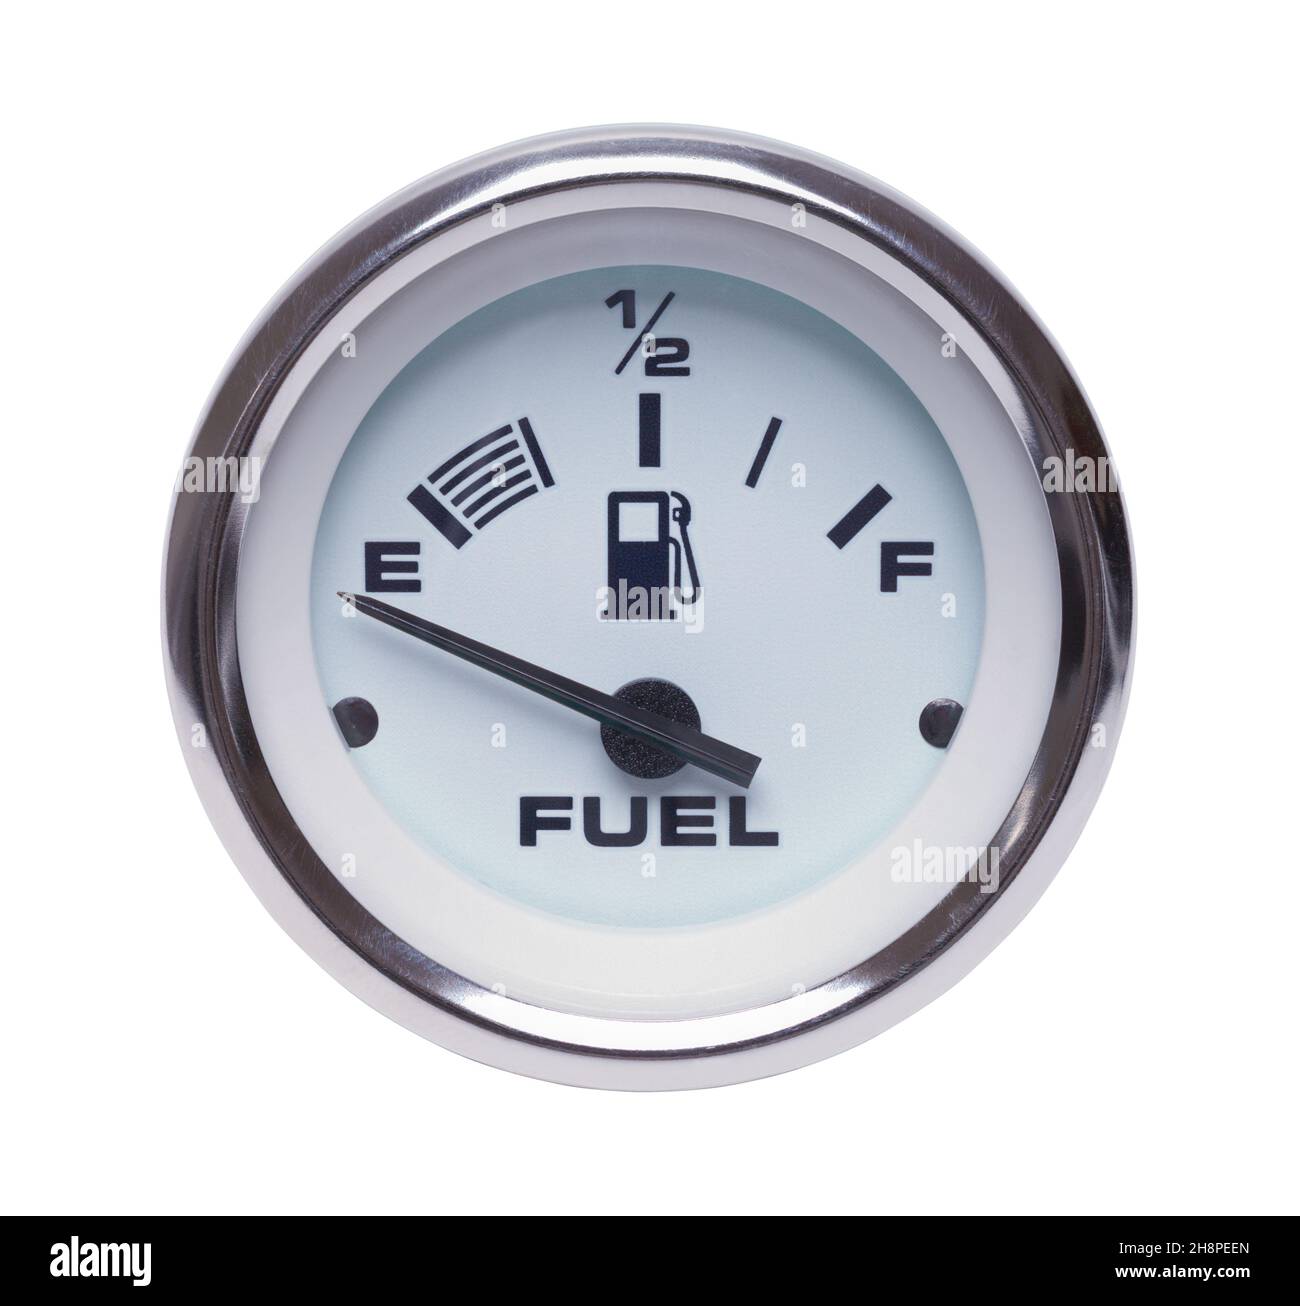 L'indicatore di livello carburante vuoto si spegne in bianco. Foto Stock